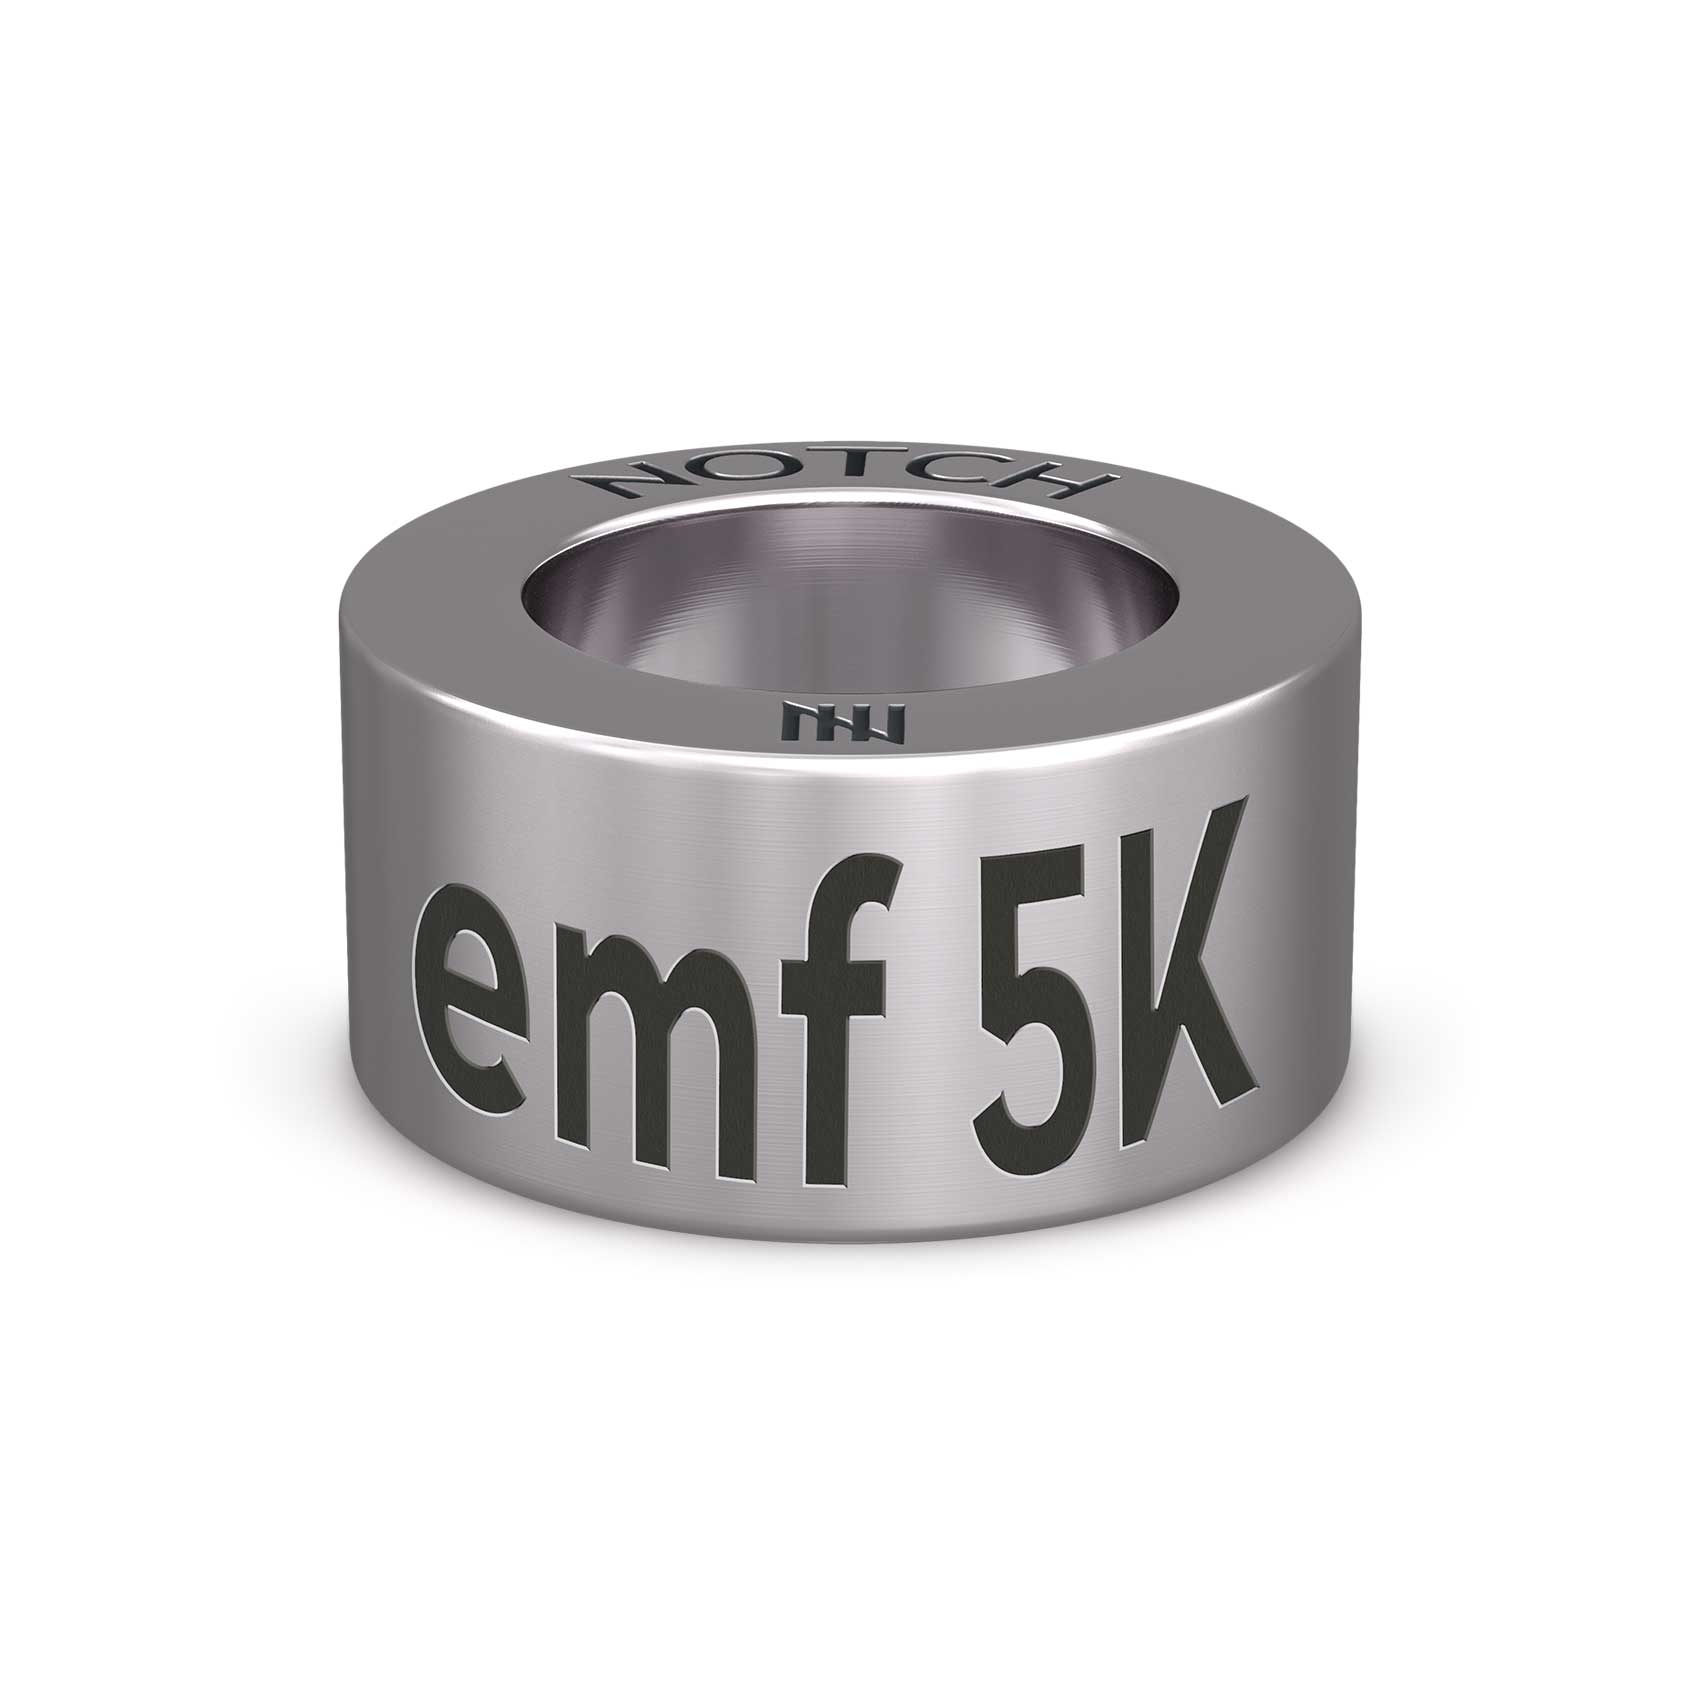 EMF 5K NOTCH Charm